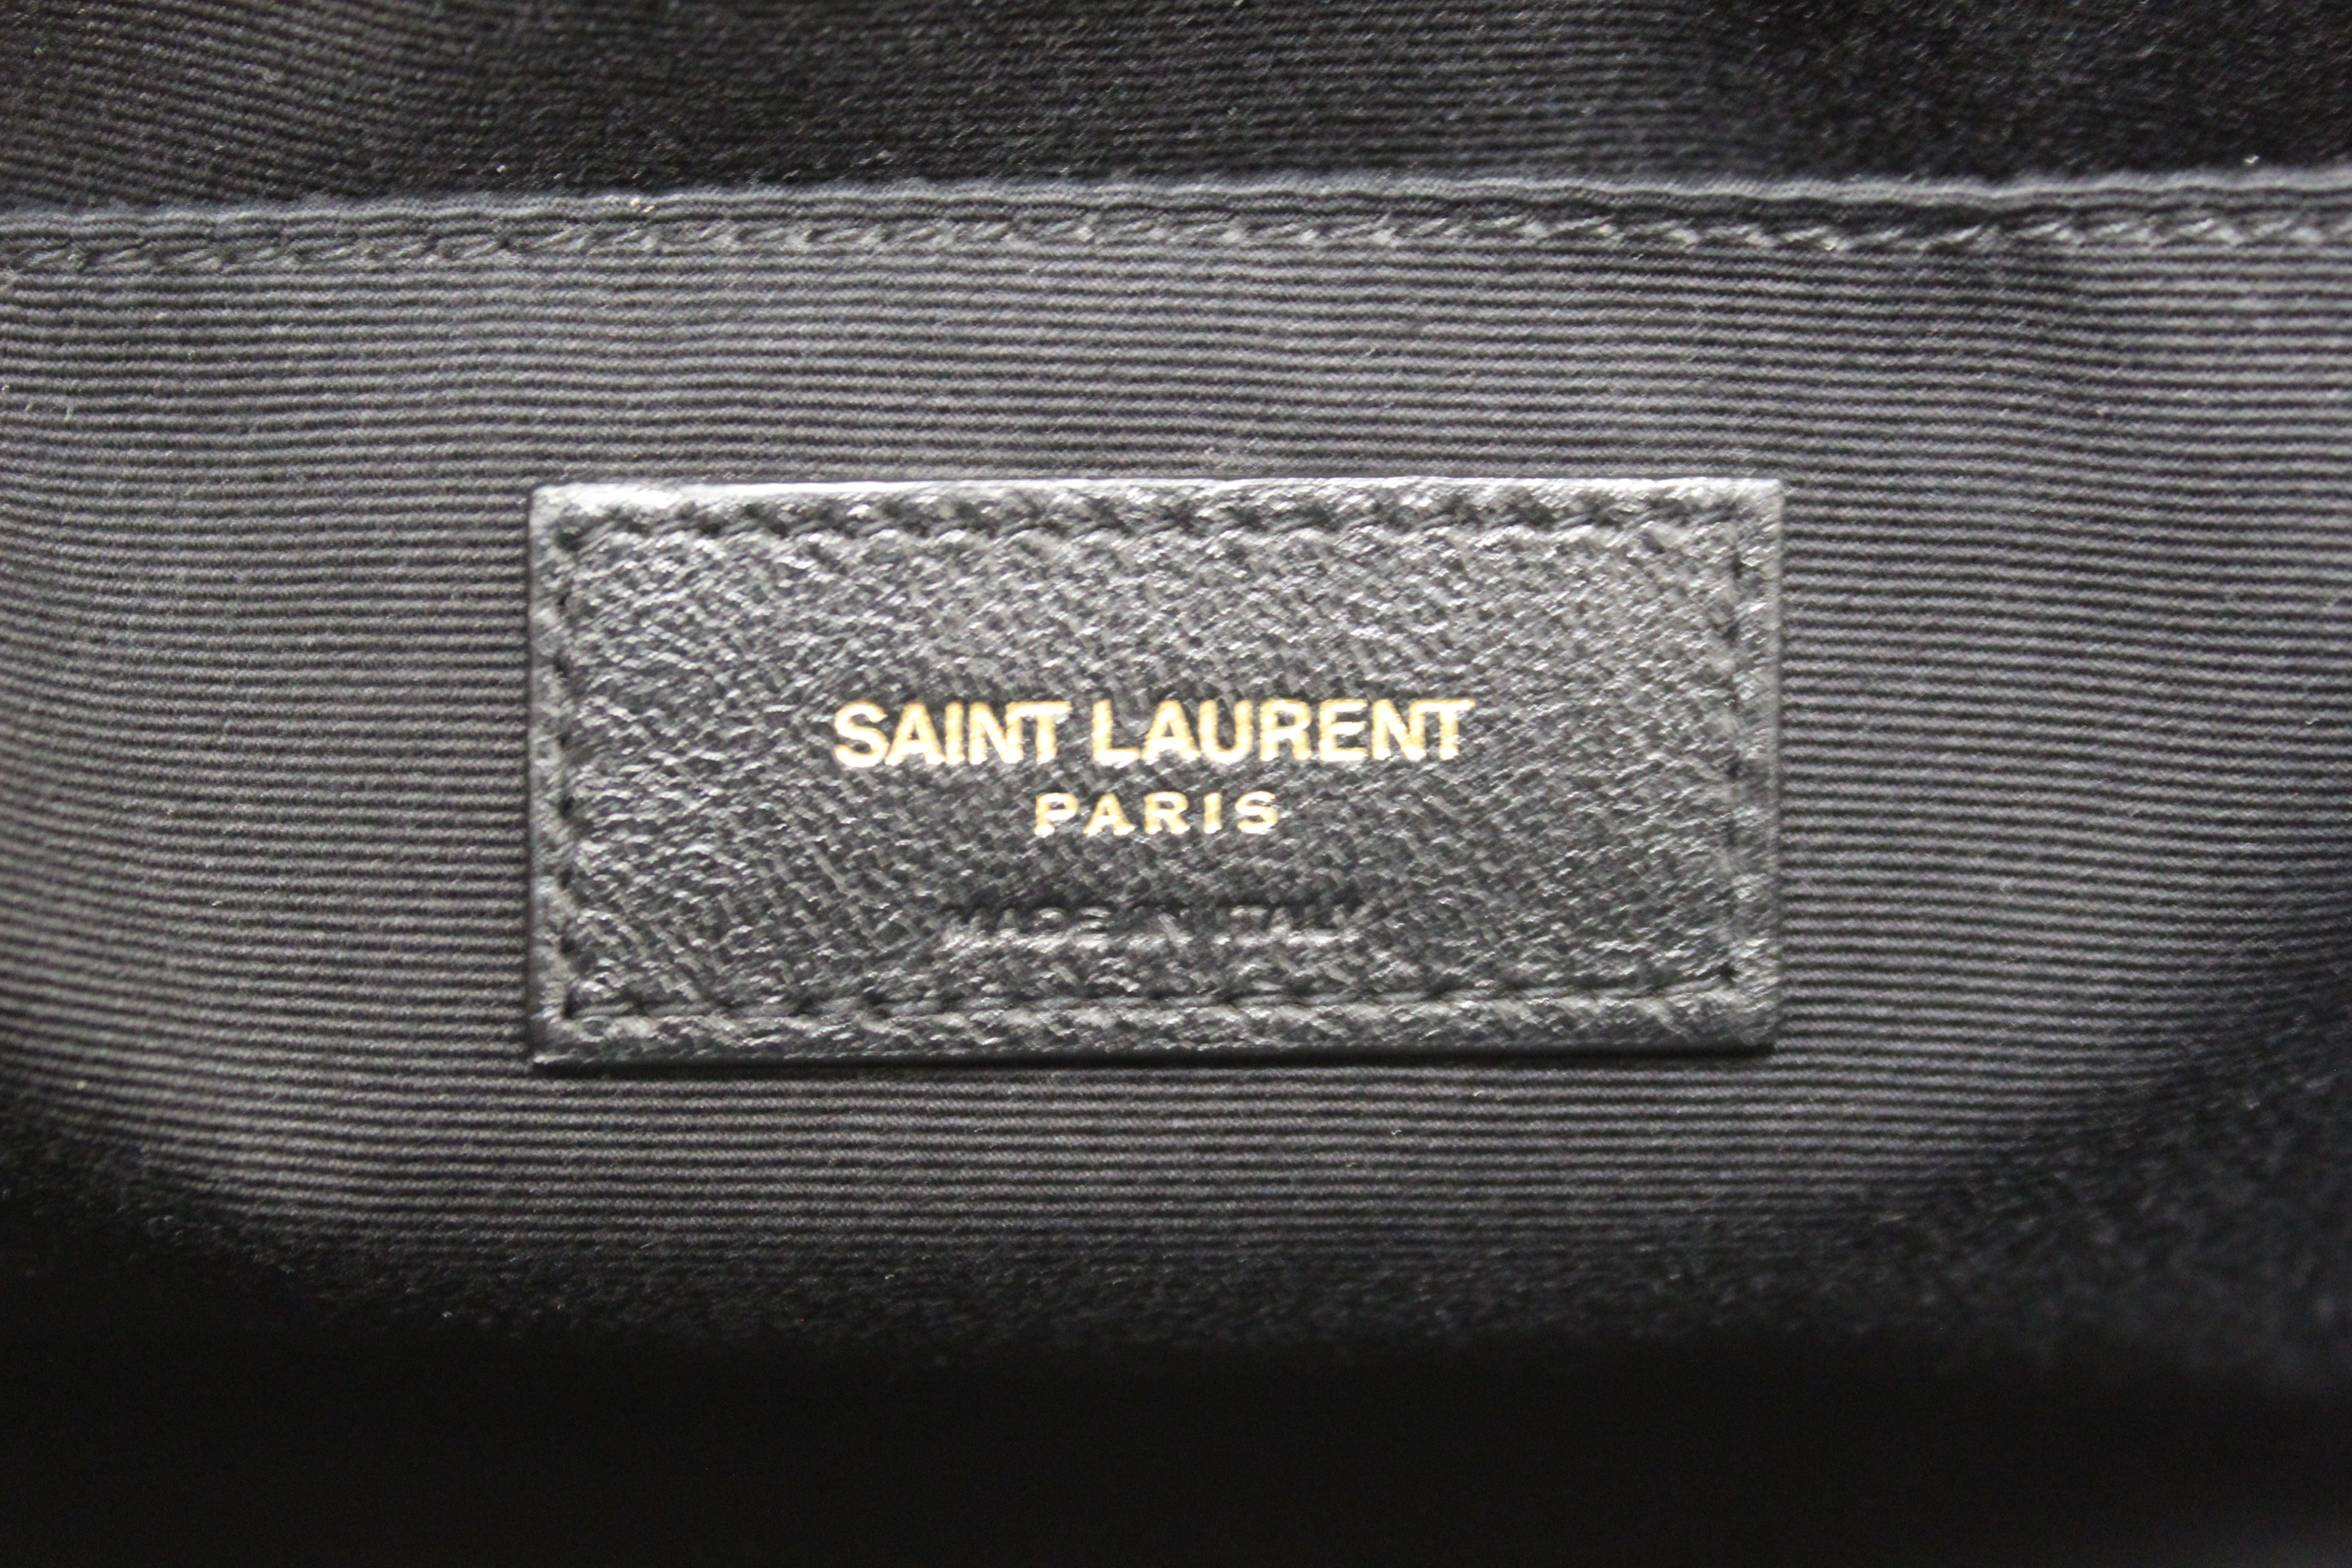 Authentic YSL Yves Saint Laurent Black Velvet Leather Lou Camera Messenger Bag